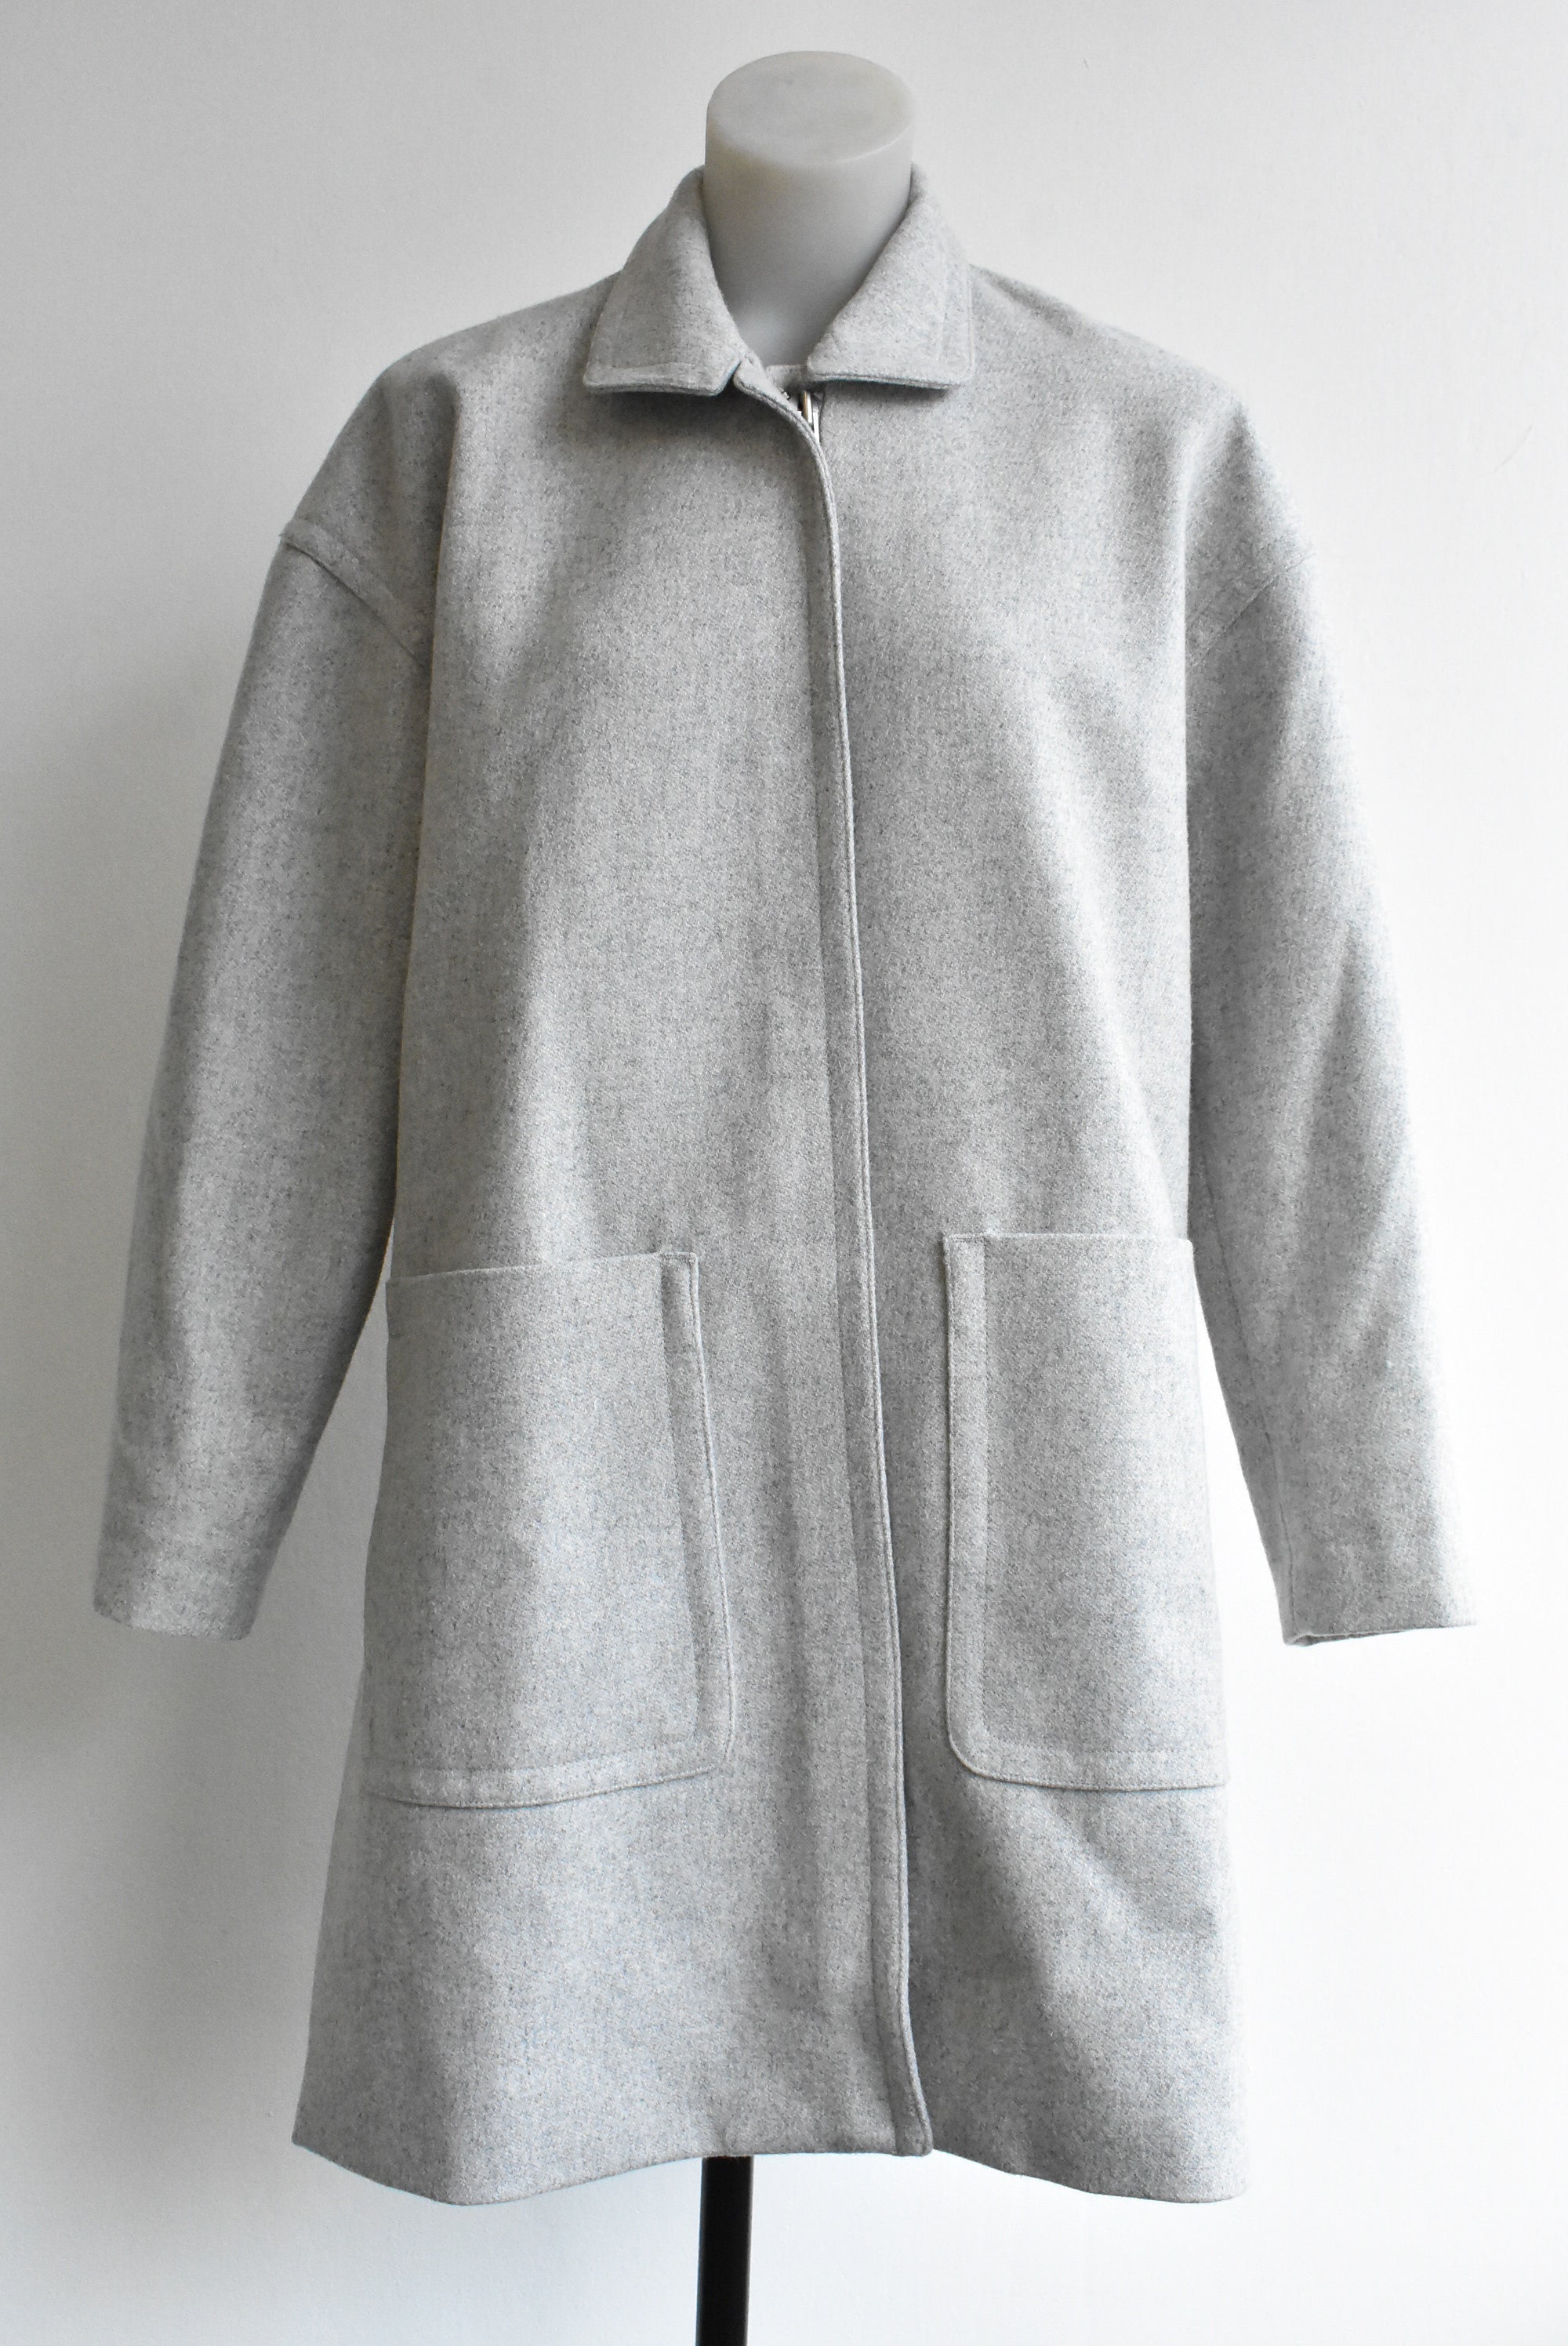 Trenery grey wool blend coat, XS – Shop on Carroll Online